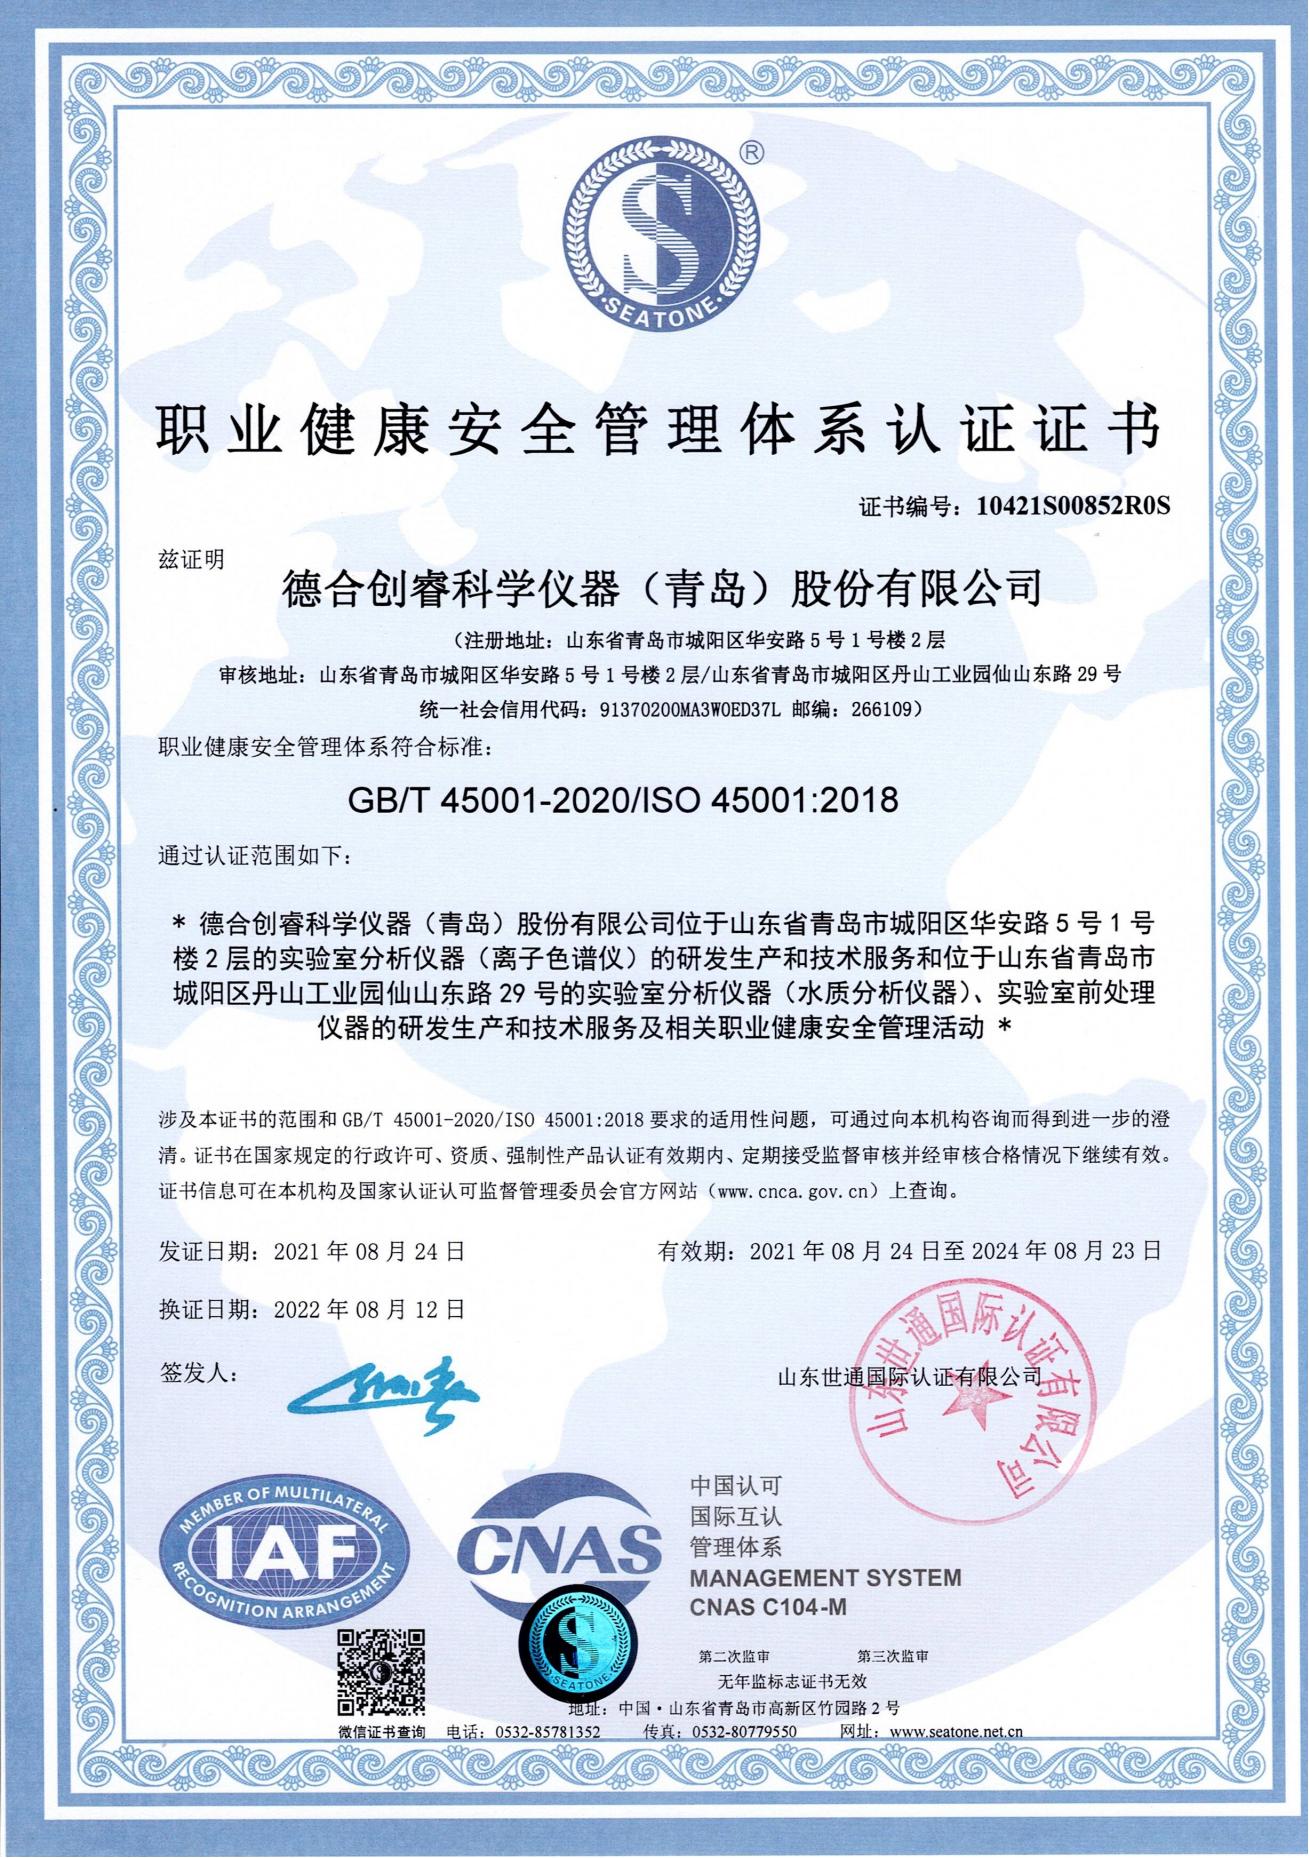 新蒲京娱乐场官网8555cc最新网站离子色谱仪职业健康安全管理体系认证证书